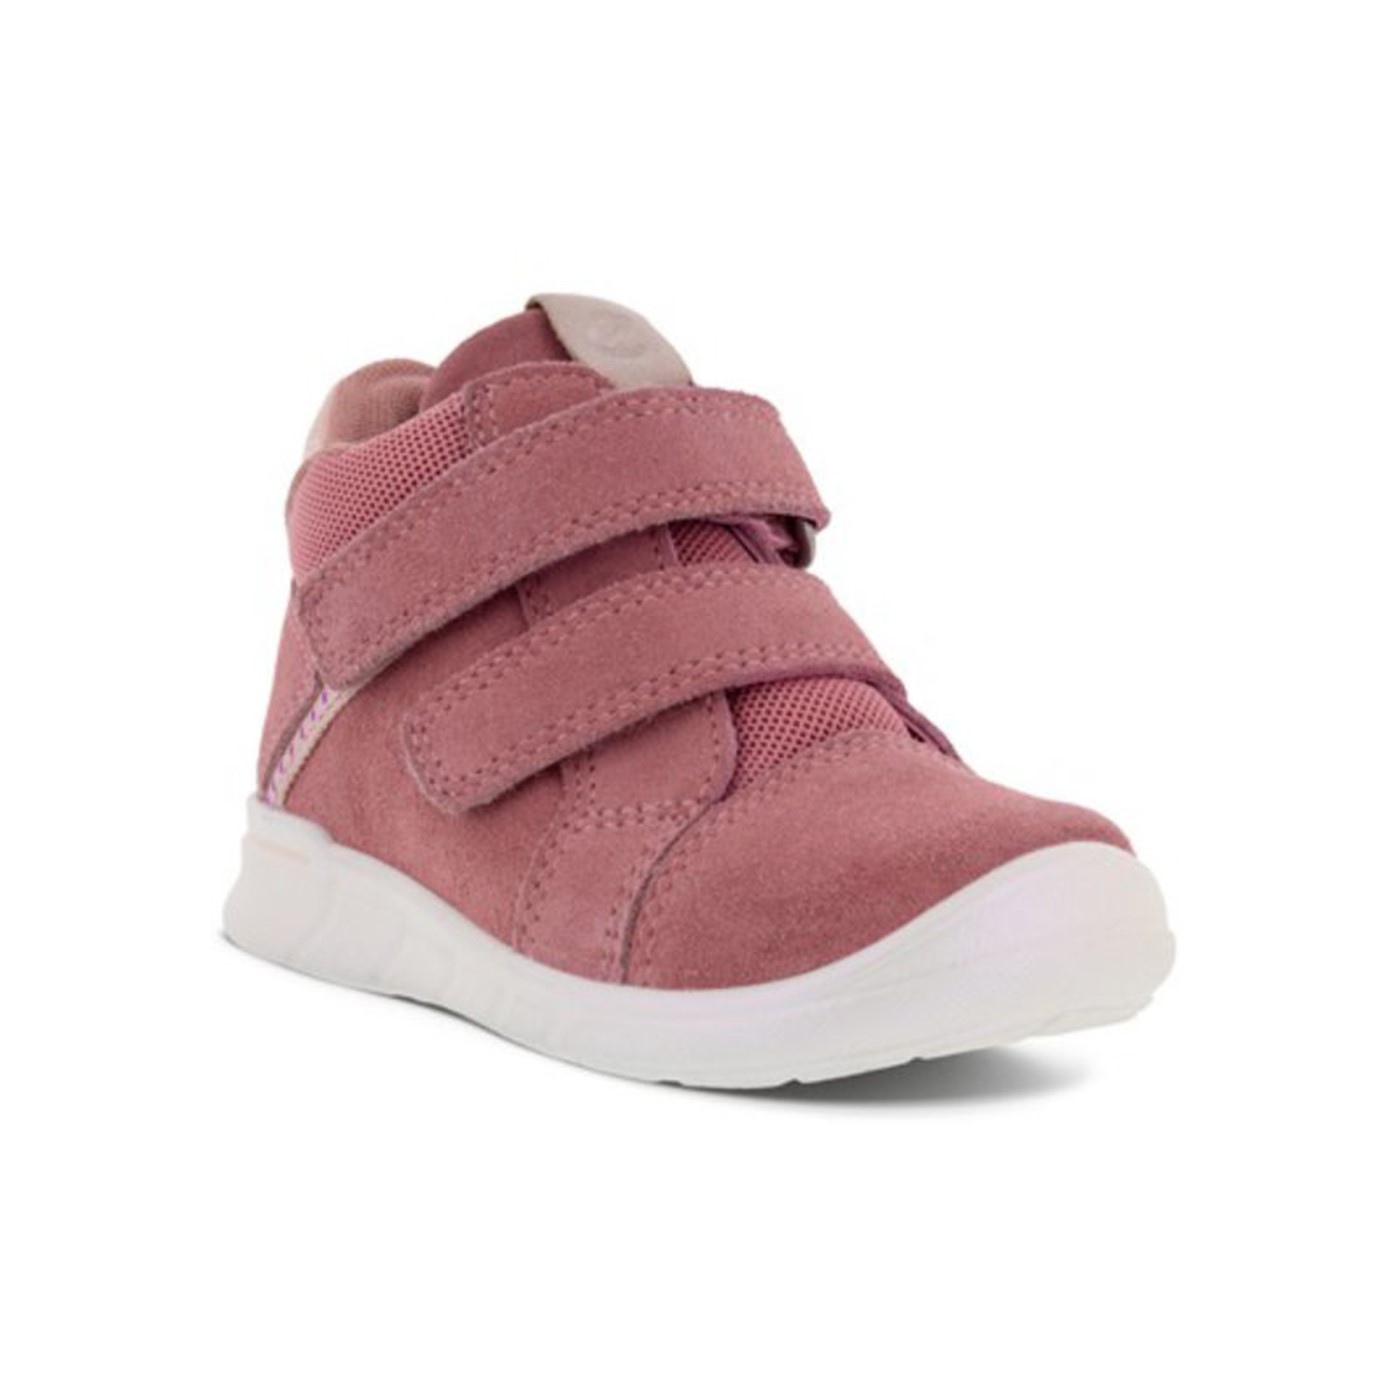 grund indelukke Aktiver Pige baby sko i rosa læder (754331)